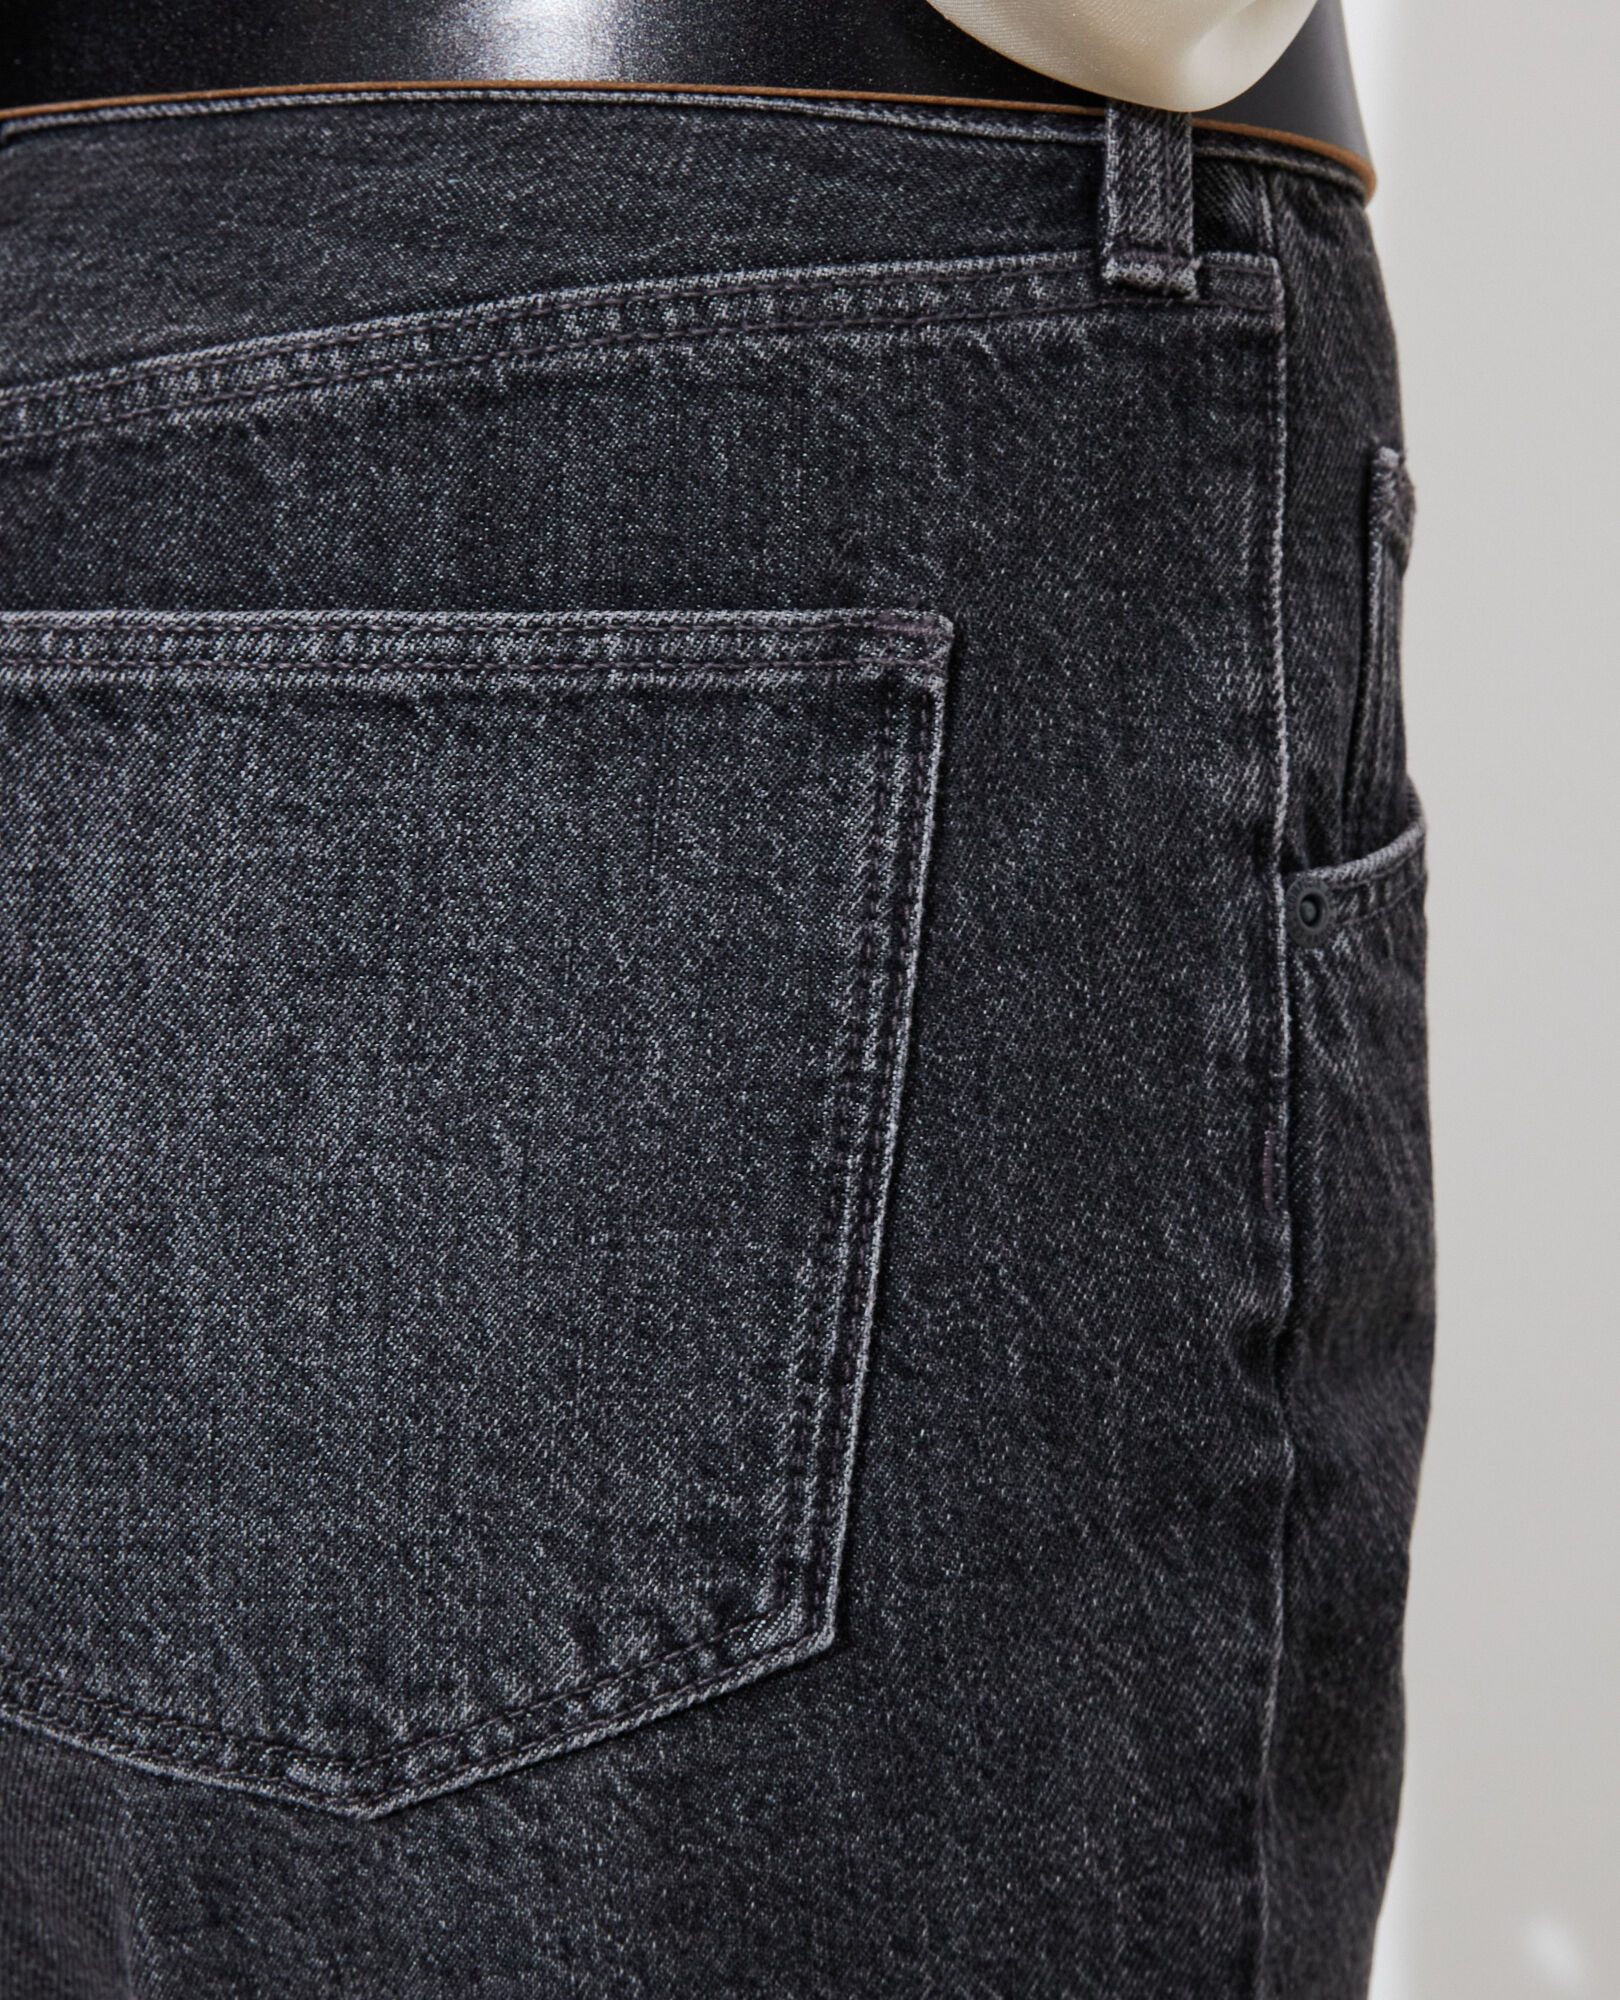 RITA - SLOUCHY - Locker sitzende Low-waist-Jeans Vintage grey Perokey